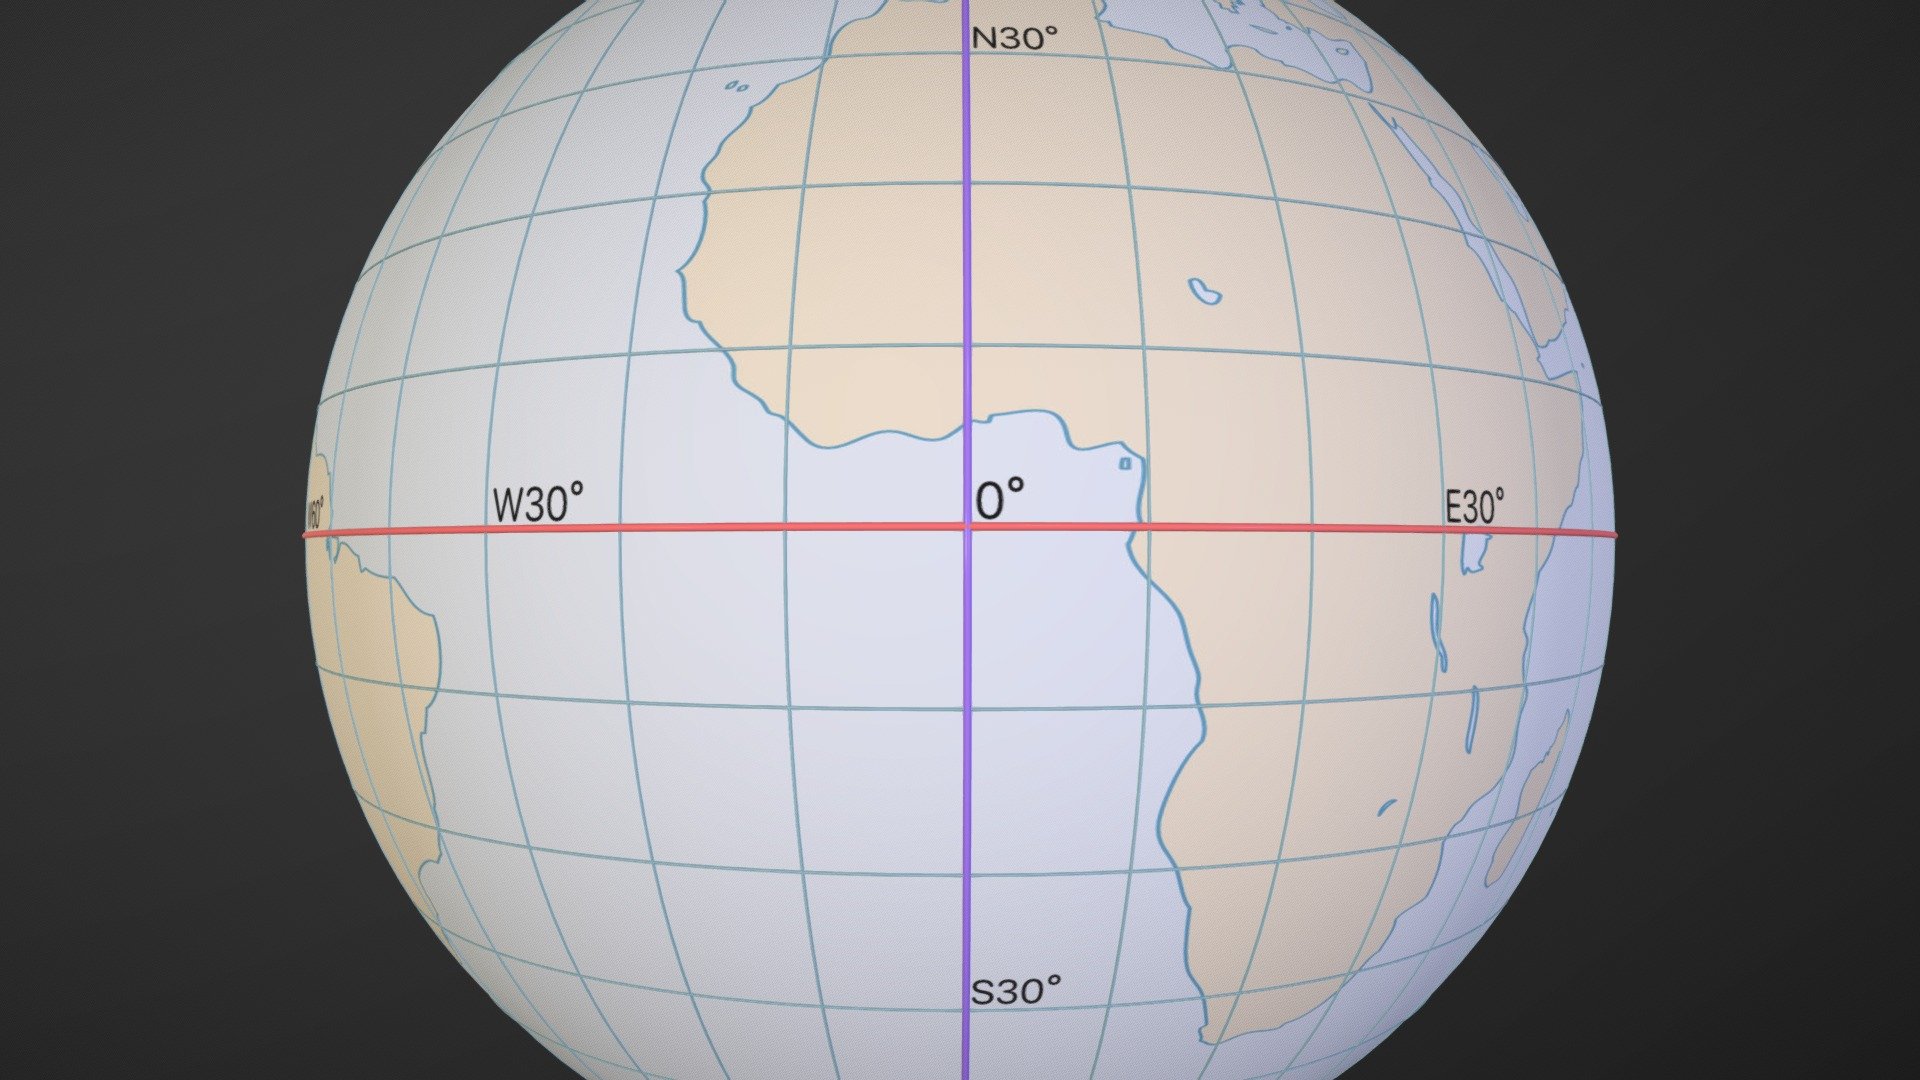 world globe map with latitude and longitude